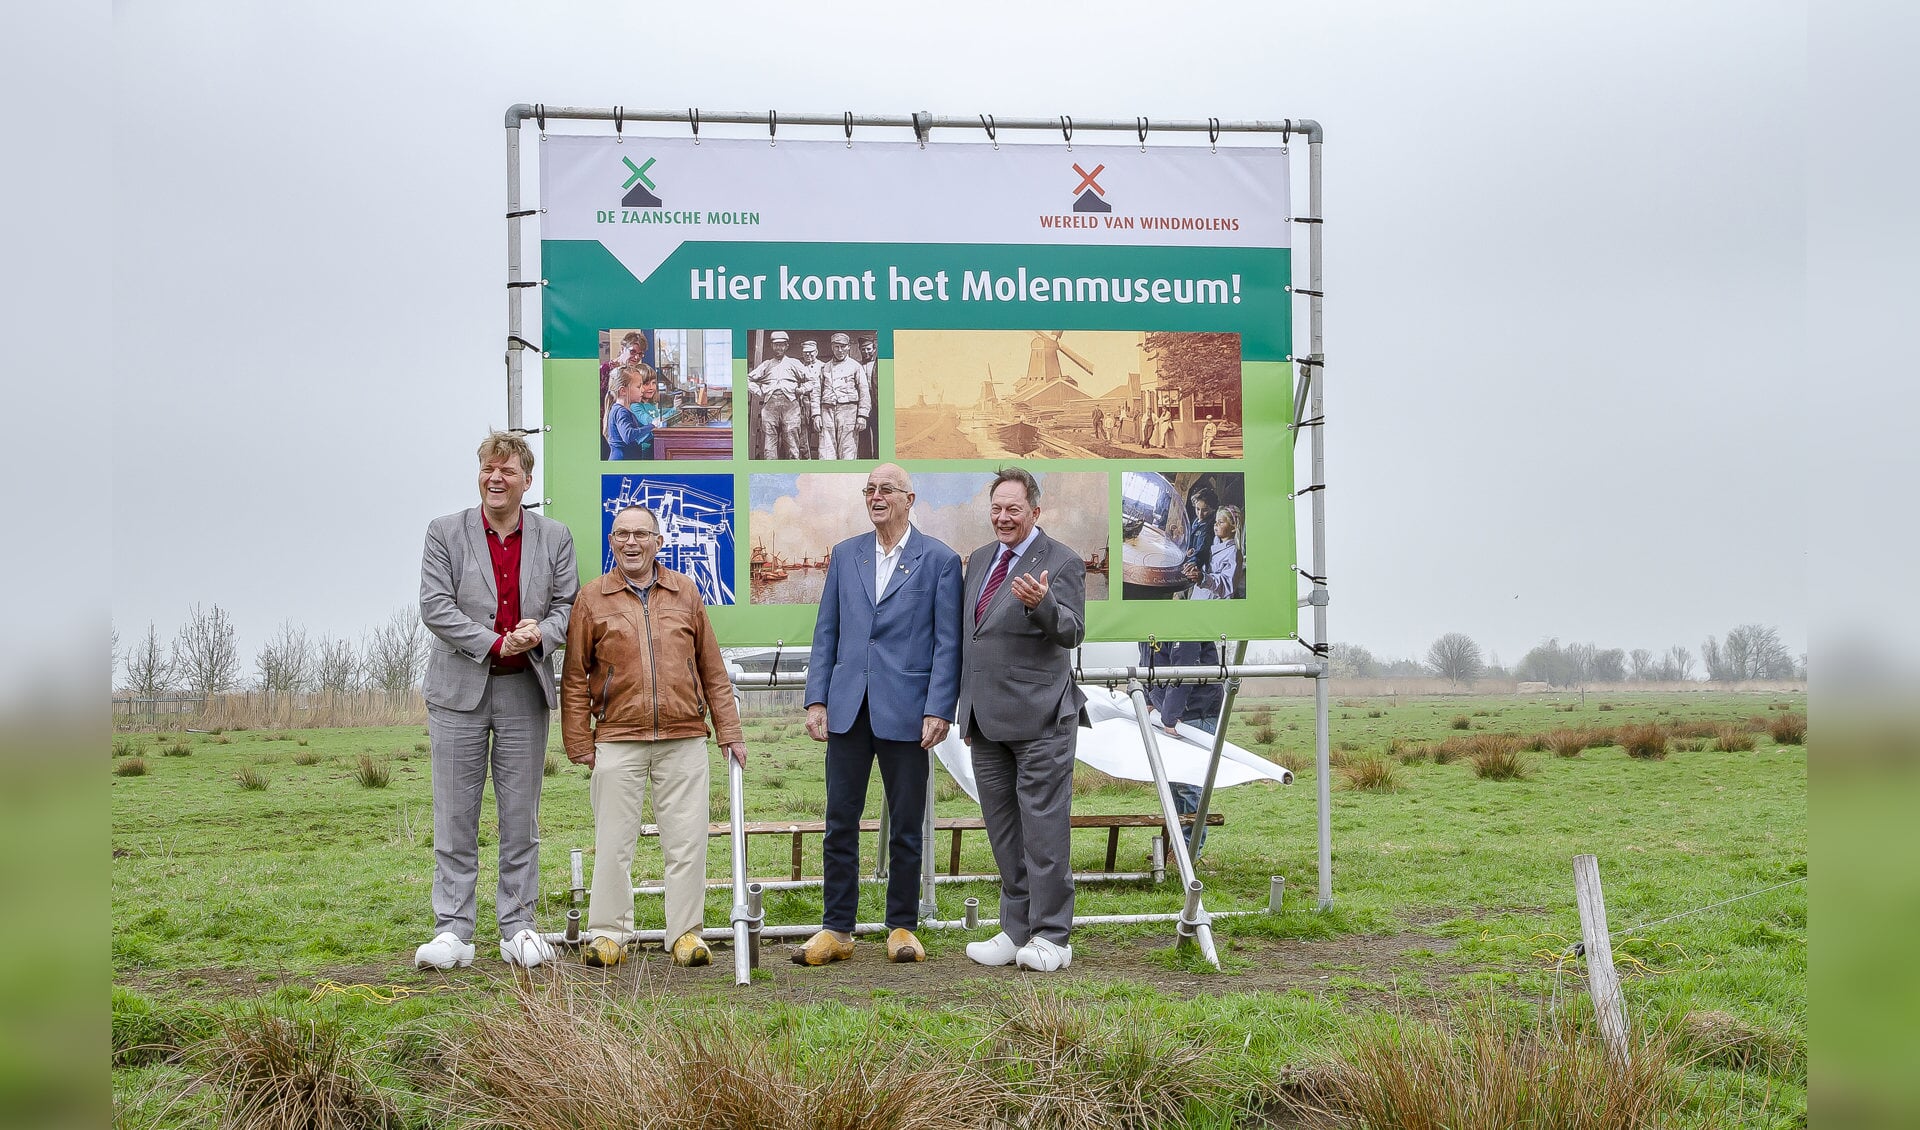 V.l.n.r. Jan Hamming, Nico Maas, Gerrit Smit en Peter Tange. (Foto: Pielkenrood Public Relations)